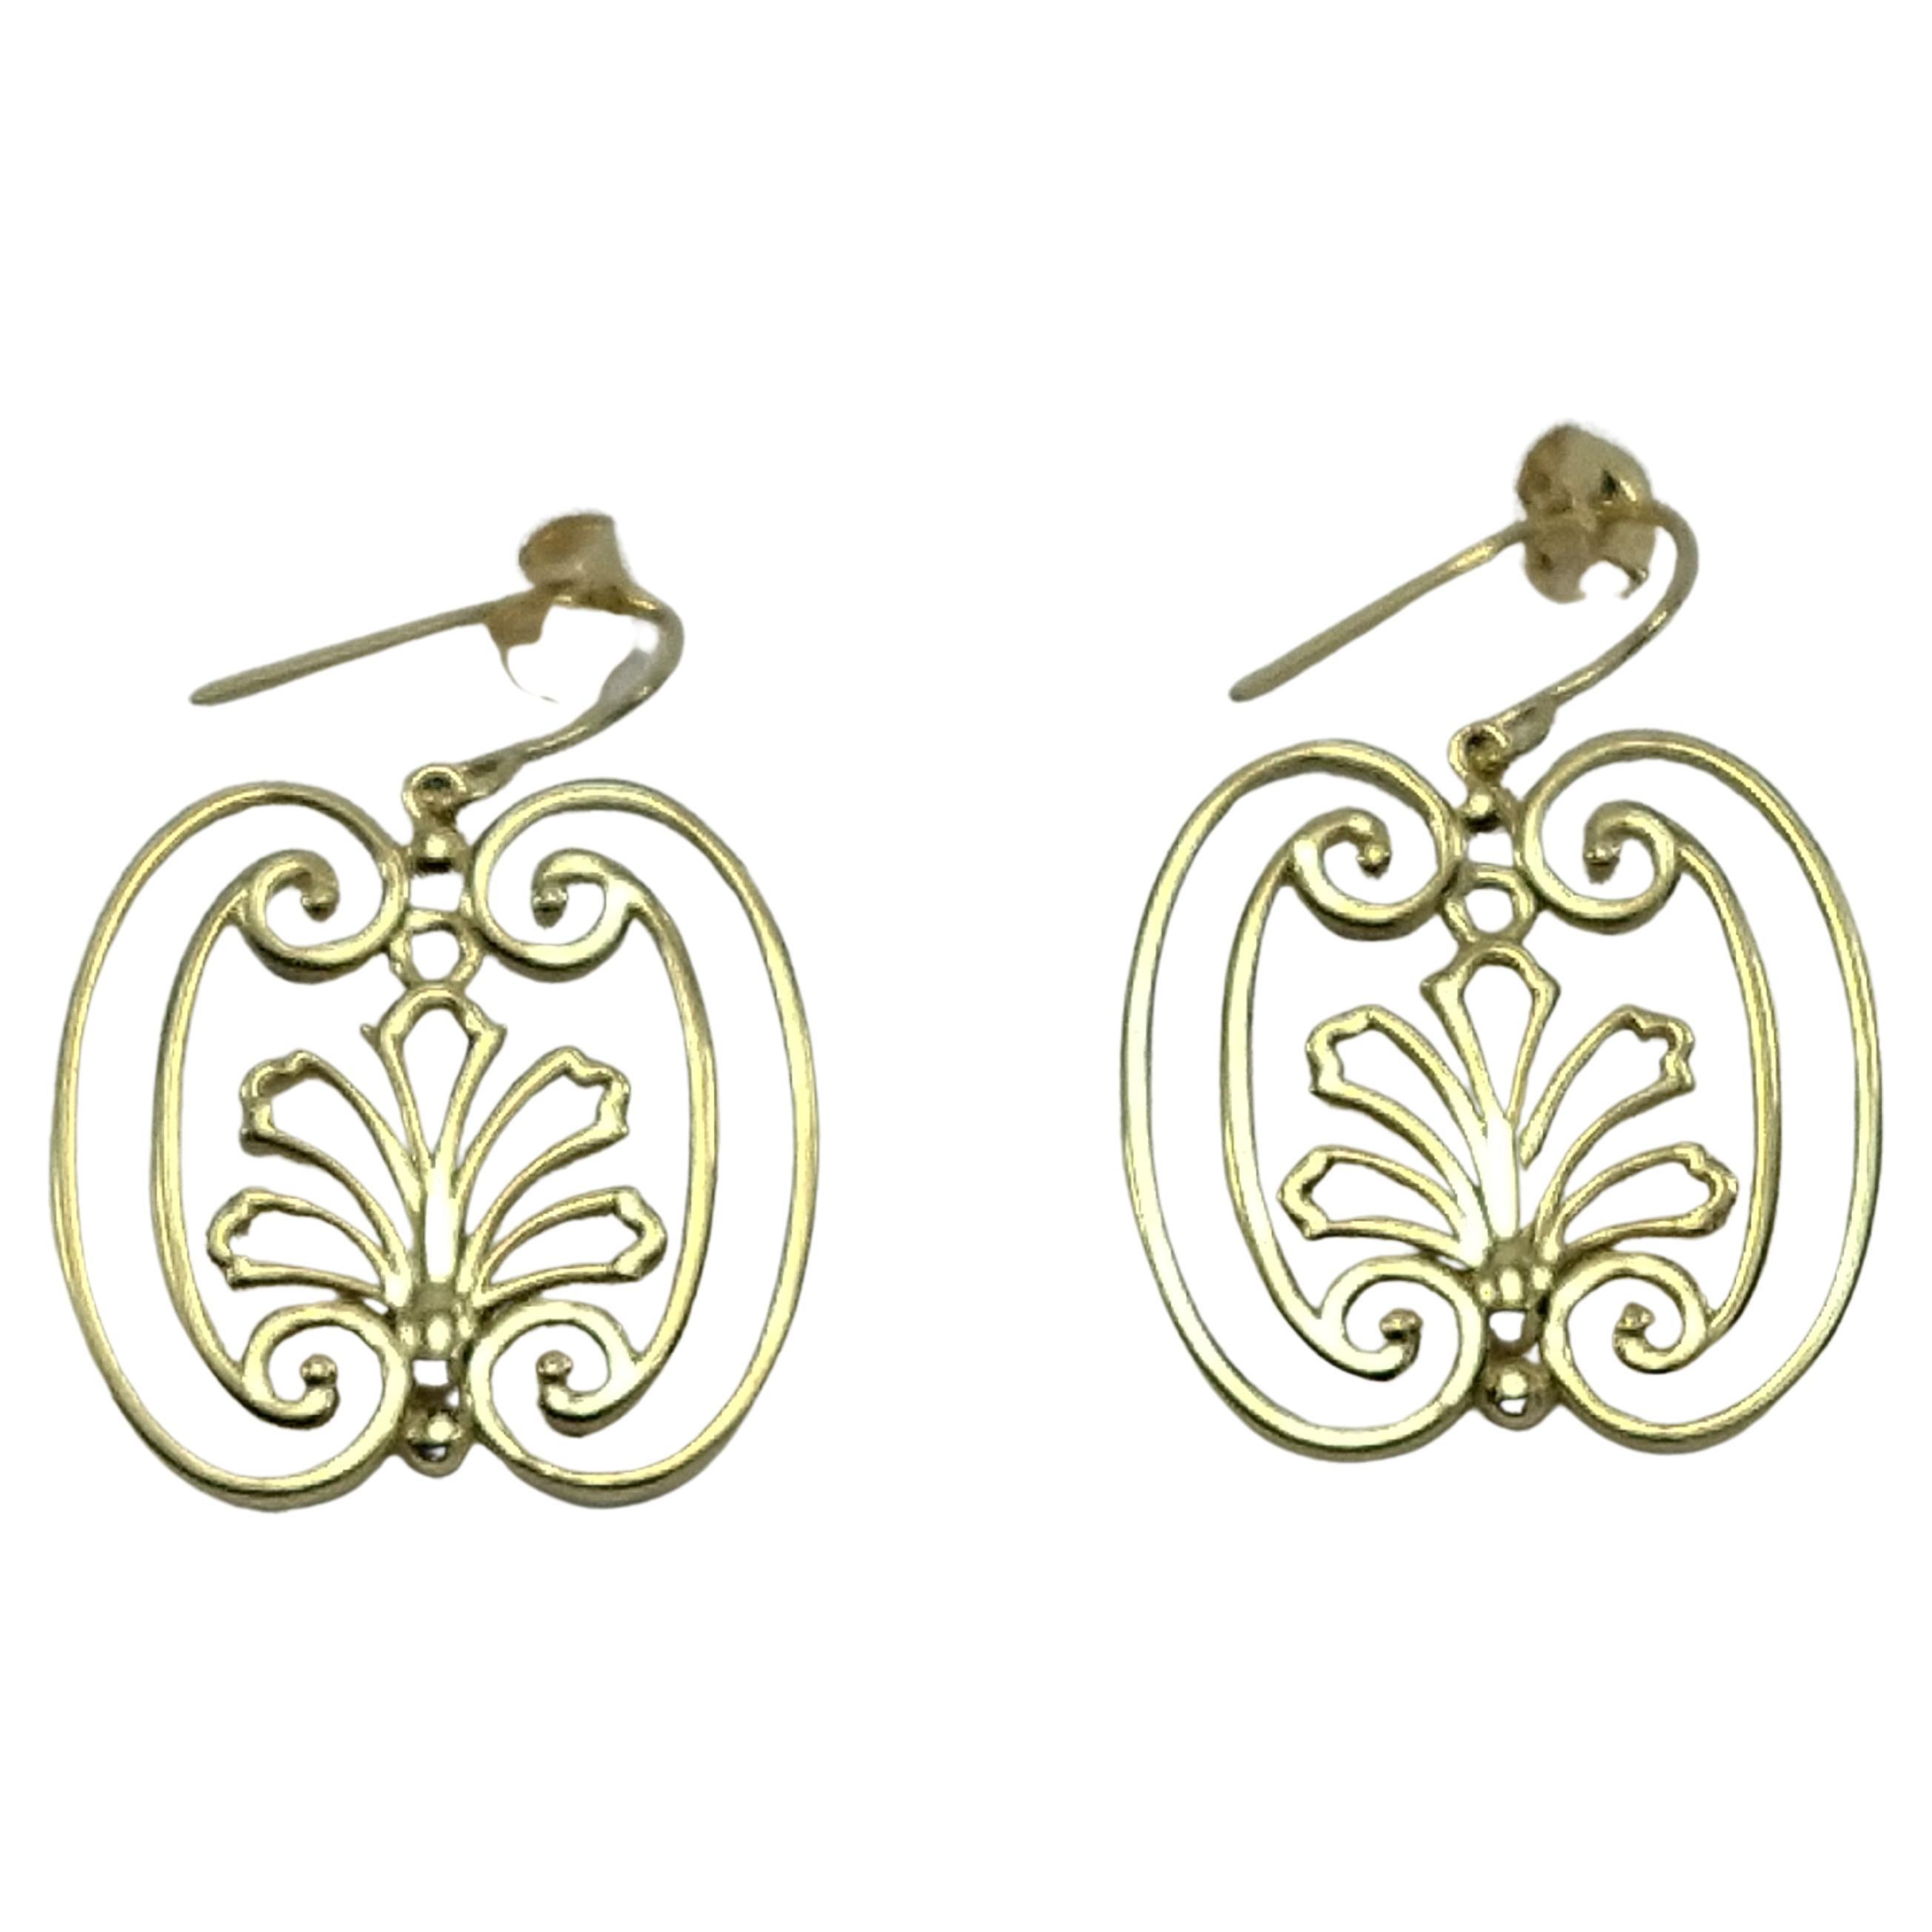 18 Karat Gelbgold French Gate Dangle Earrings , Dies ist eine Serie von Tor-Ohrringen von meinen Reisen und Inspirationen in Europa. Fotografien von Toren, Zäunen und Fenstern aus Eisen und Bronze. 
Ich nehme die alte, verlorene Kunst der eleganten,